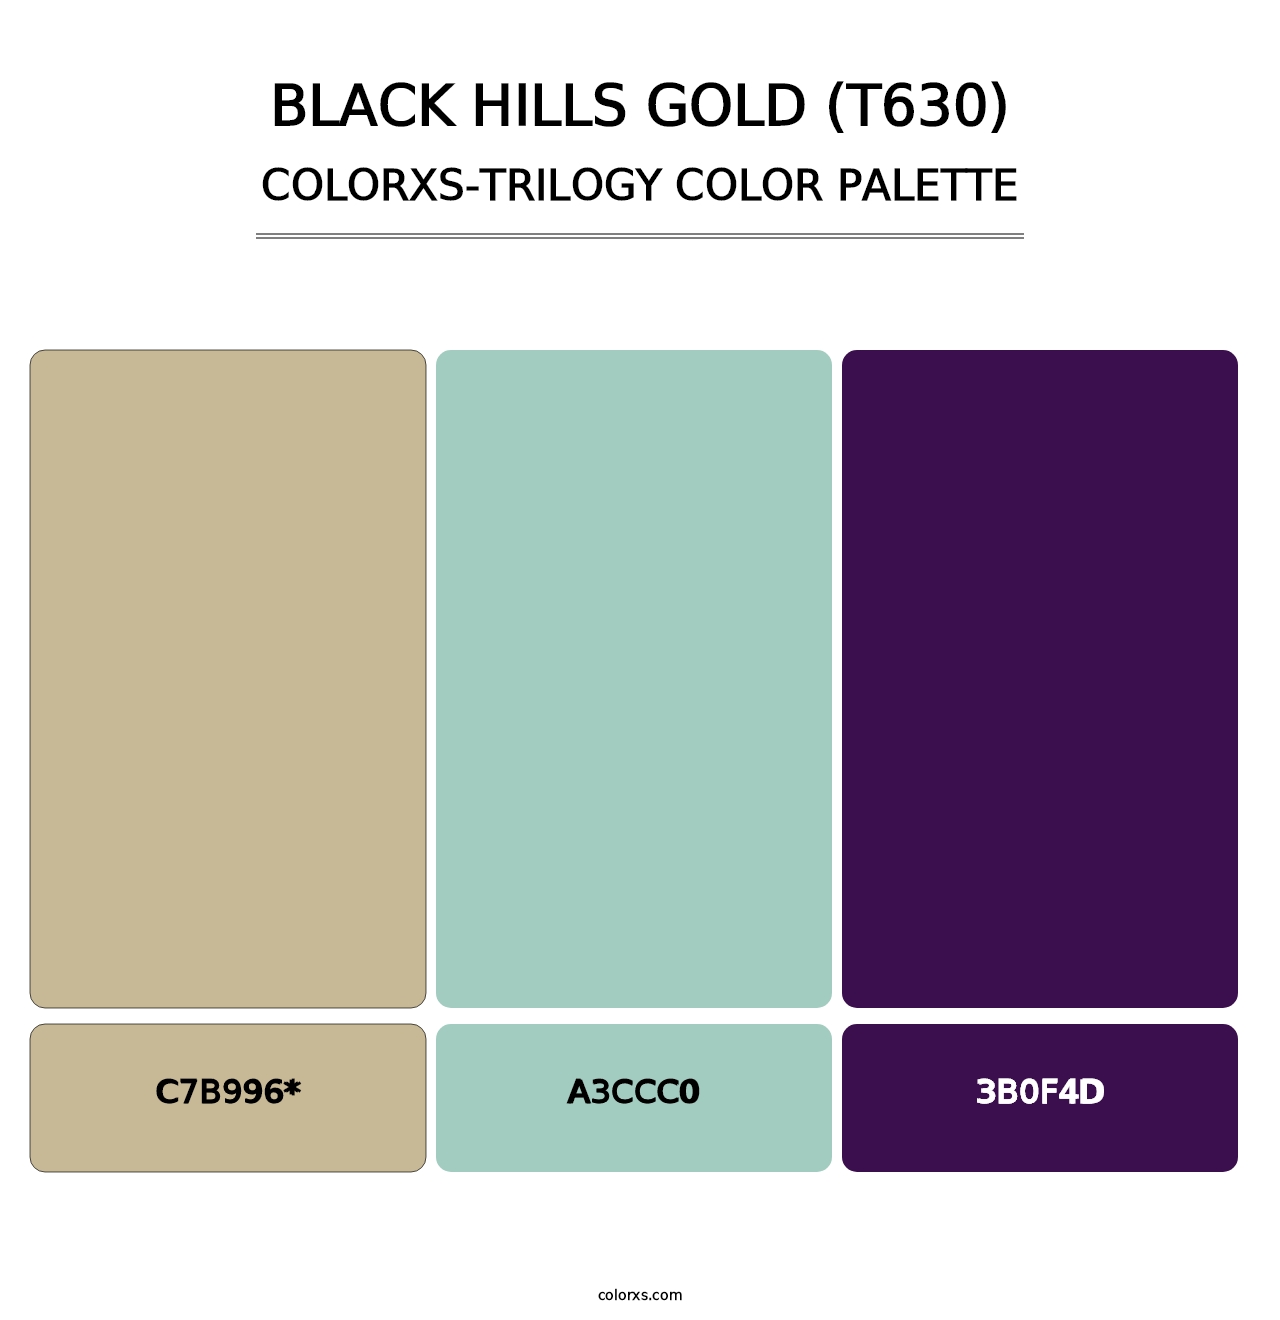 Black Hills Gold (T630) - Colorxs Trilogy Palette